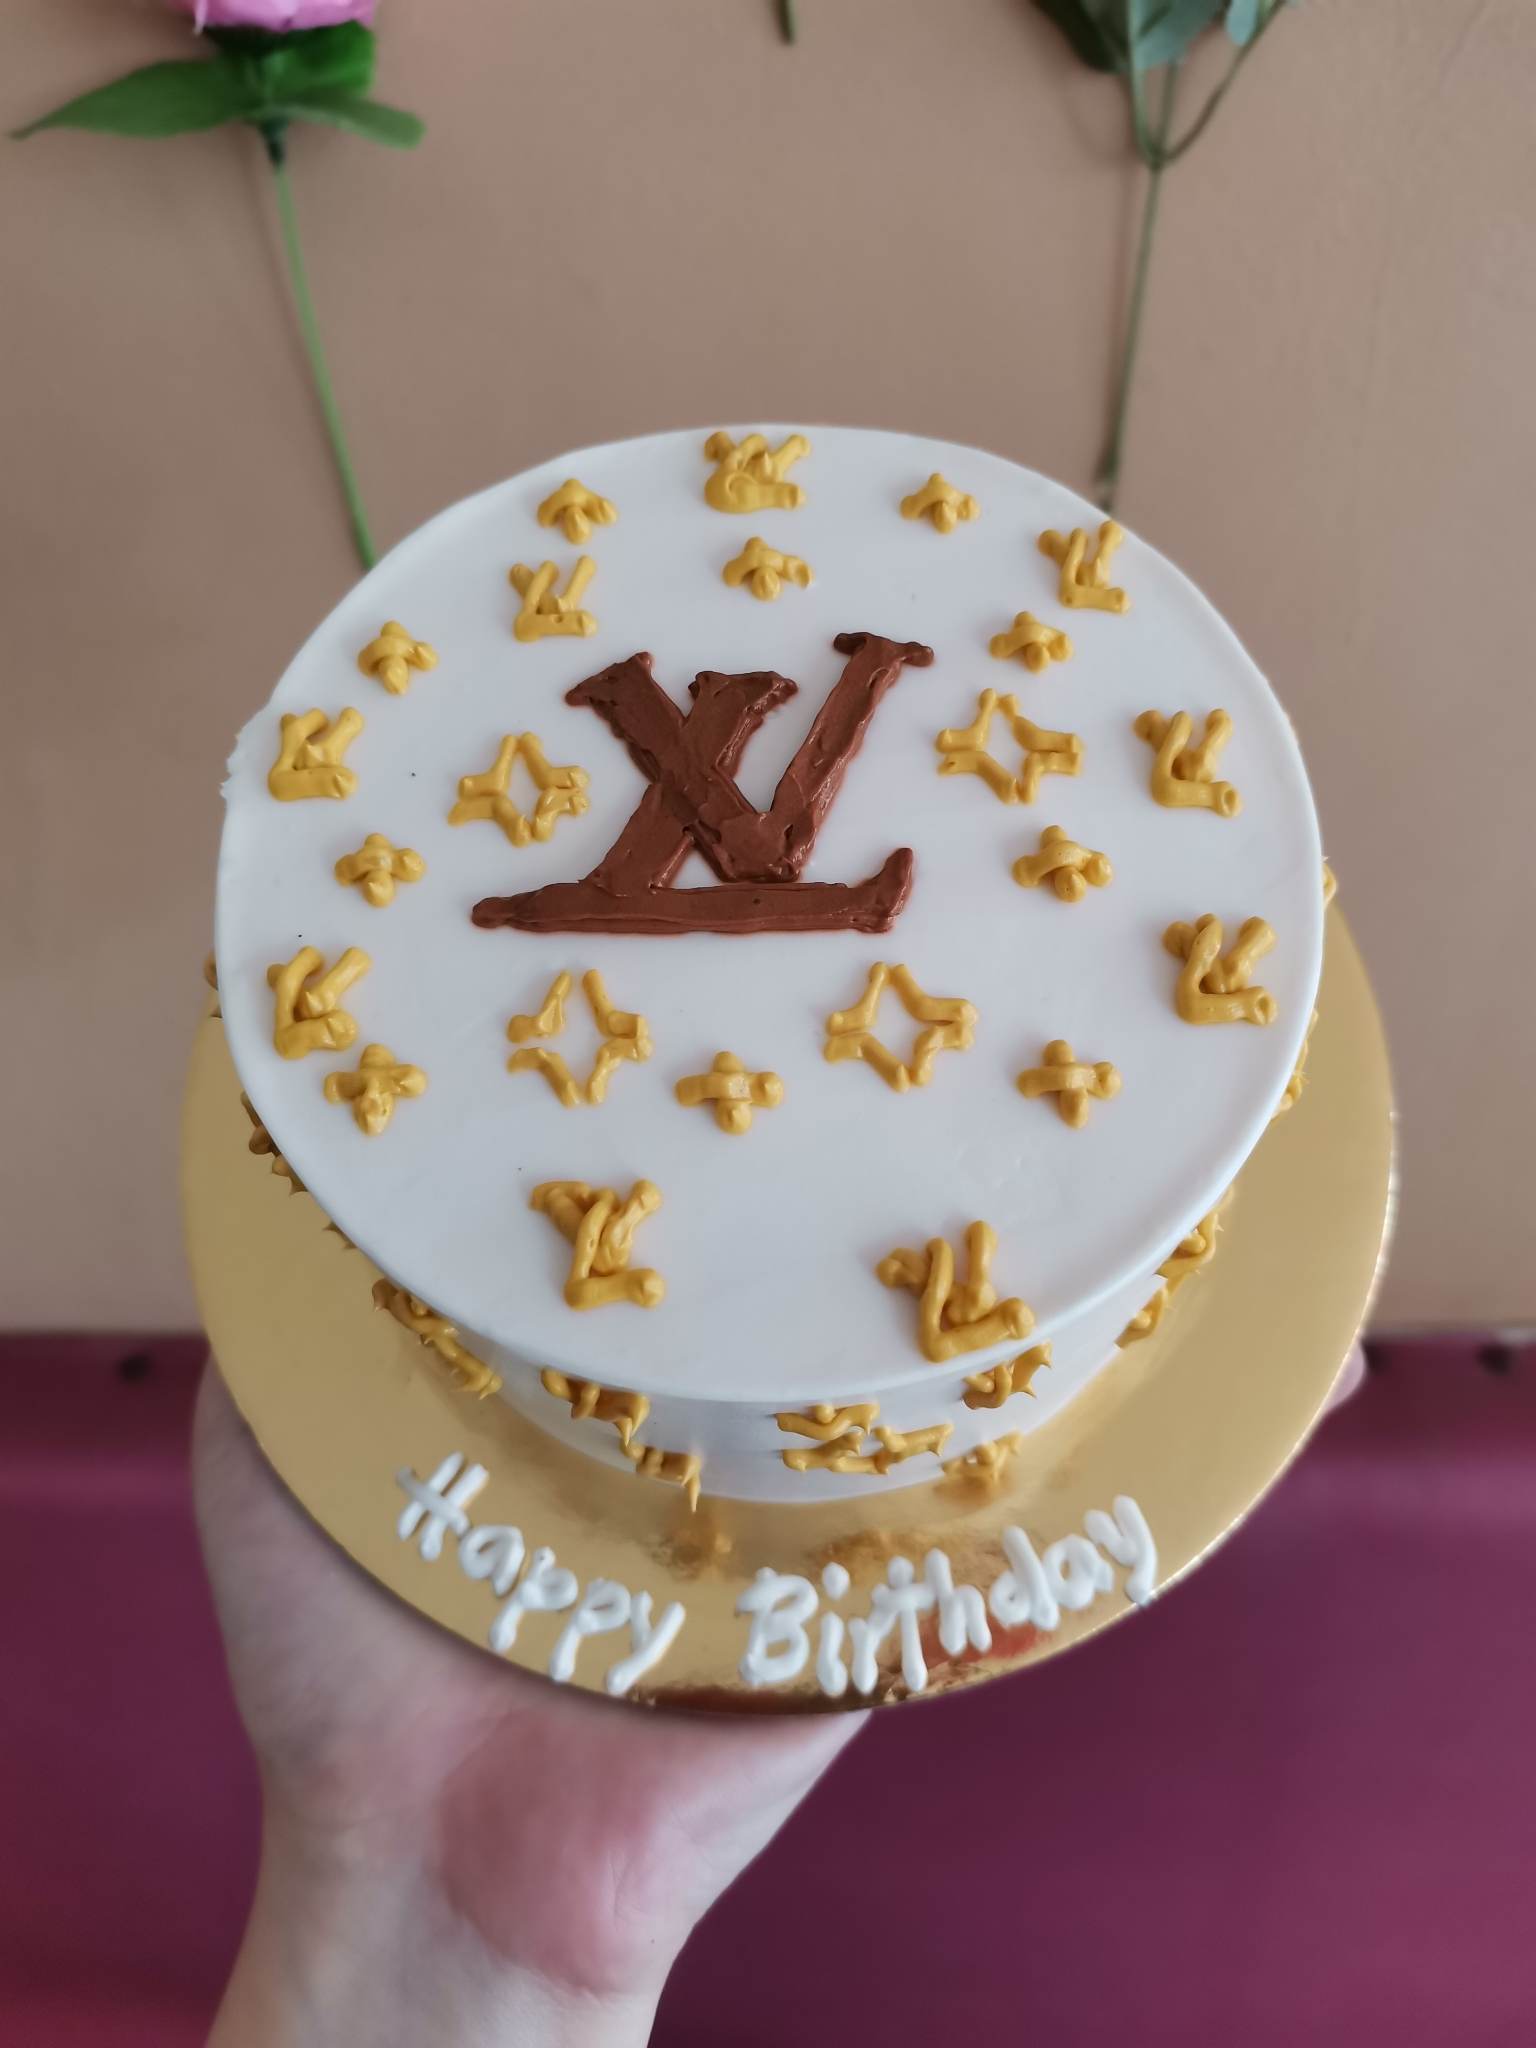 LOUIS VUITTON 21ST BIRTHDAY CAKE, Koula Kakopieros